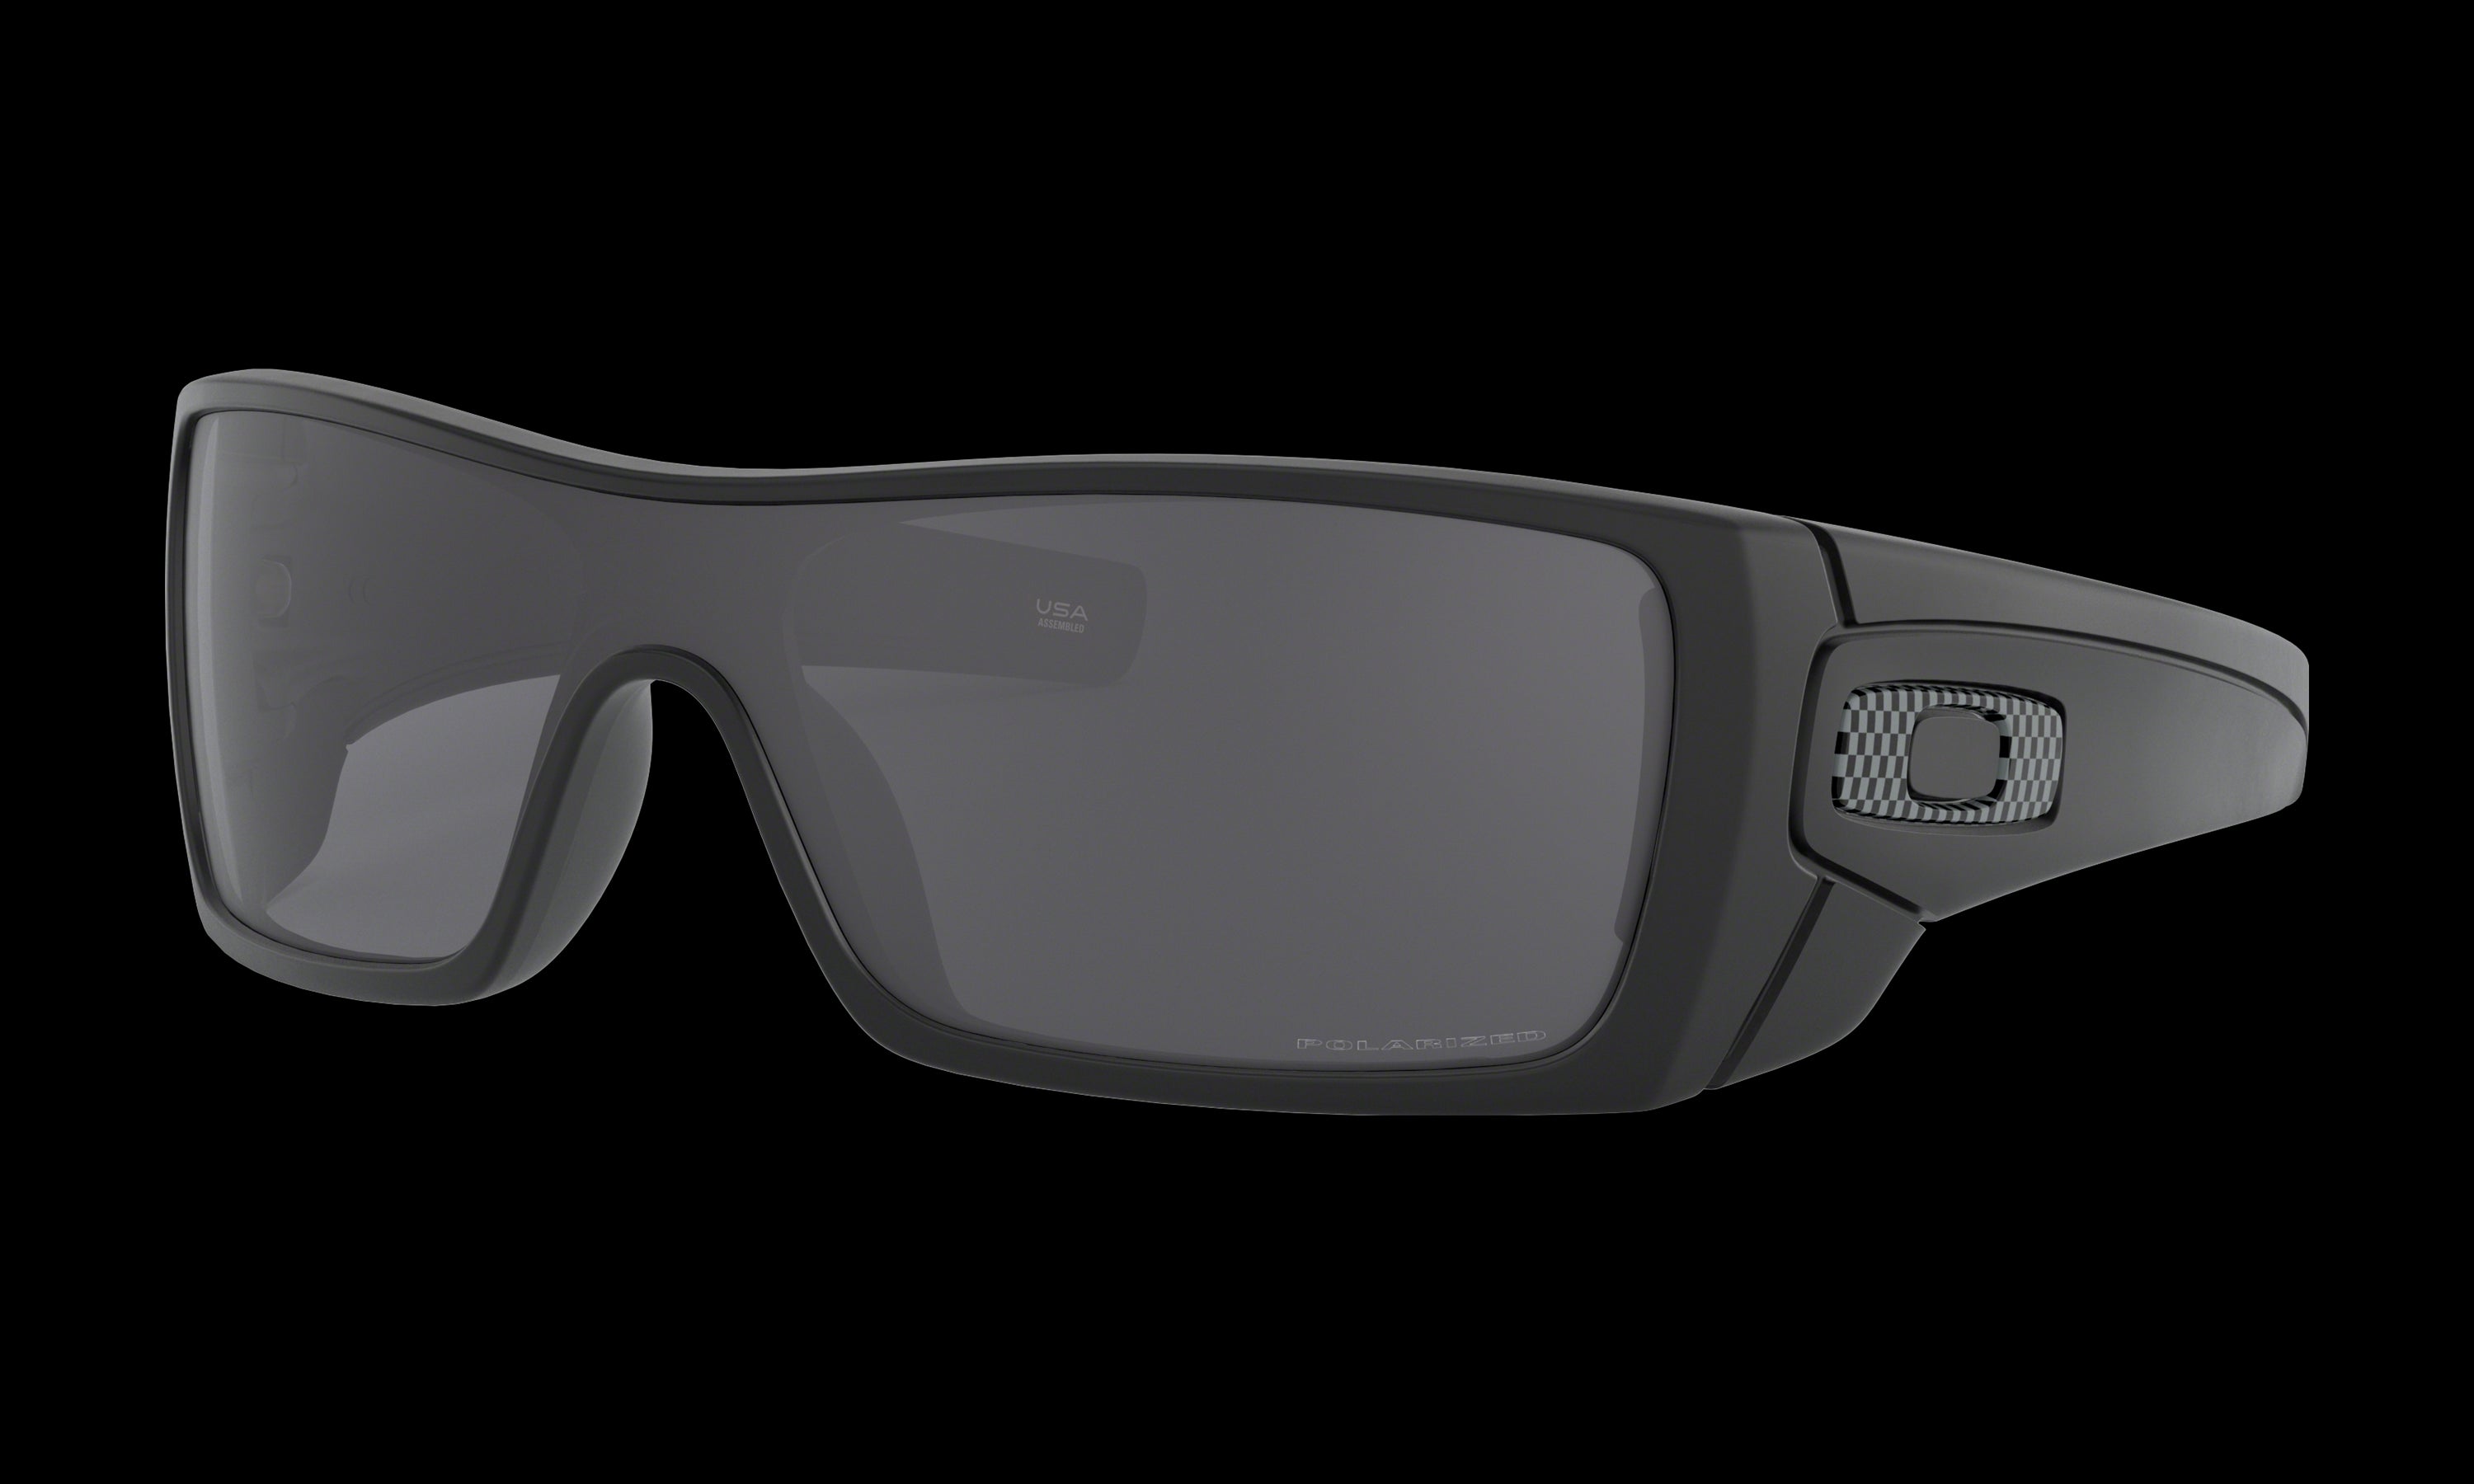 Men's Oakley Batwolf Sunglasses in Matte Black Grey Polarized